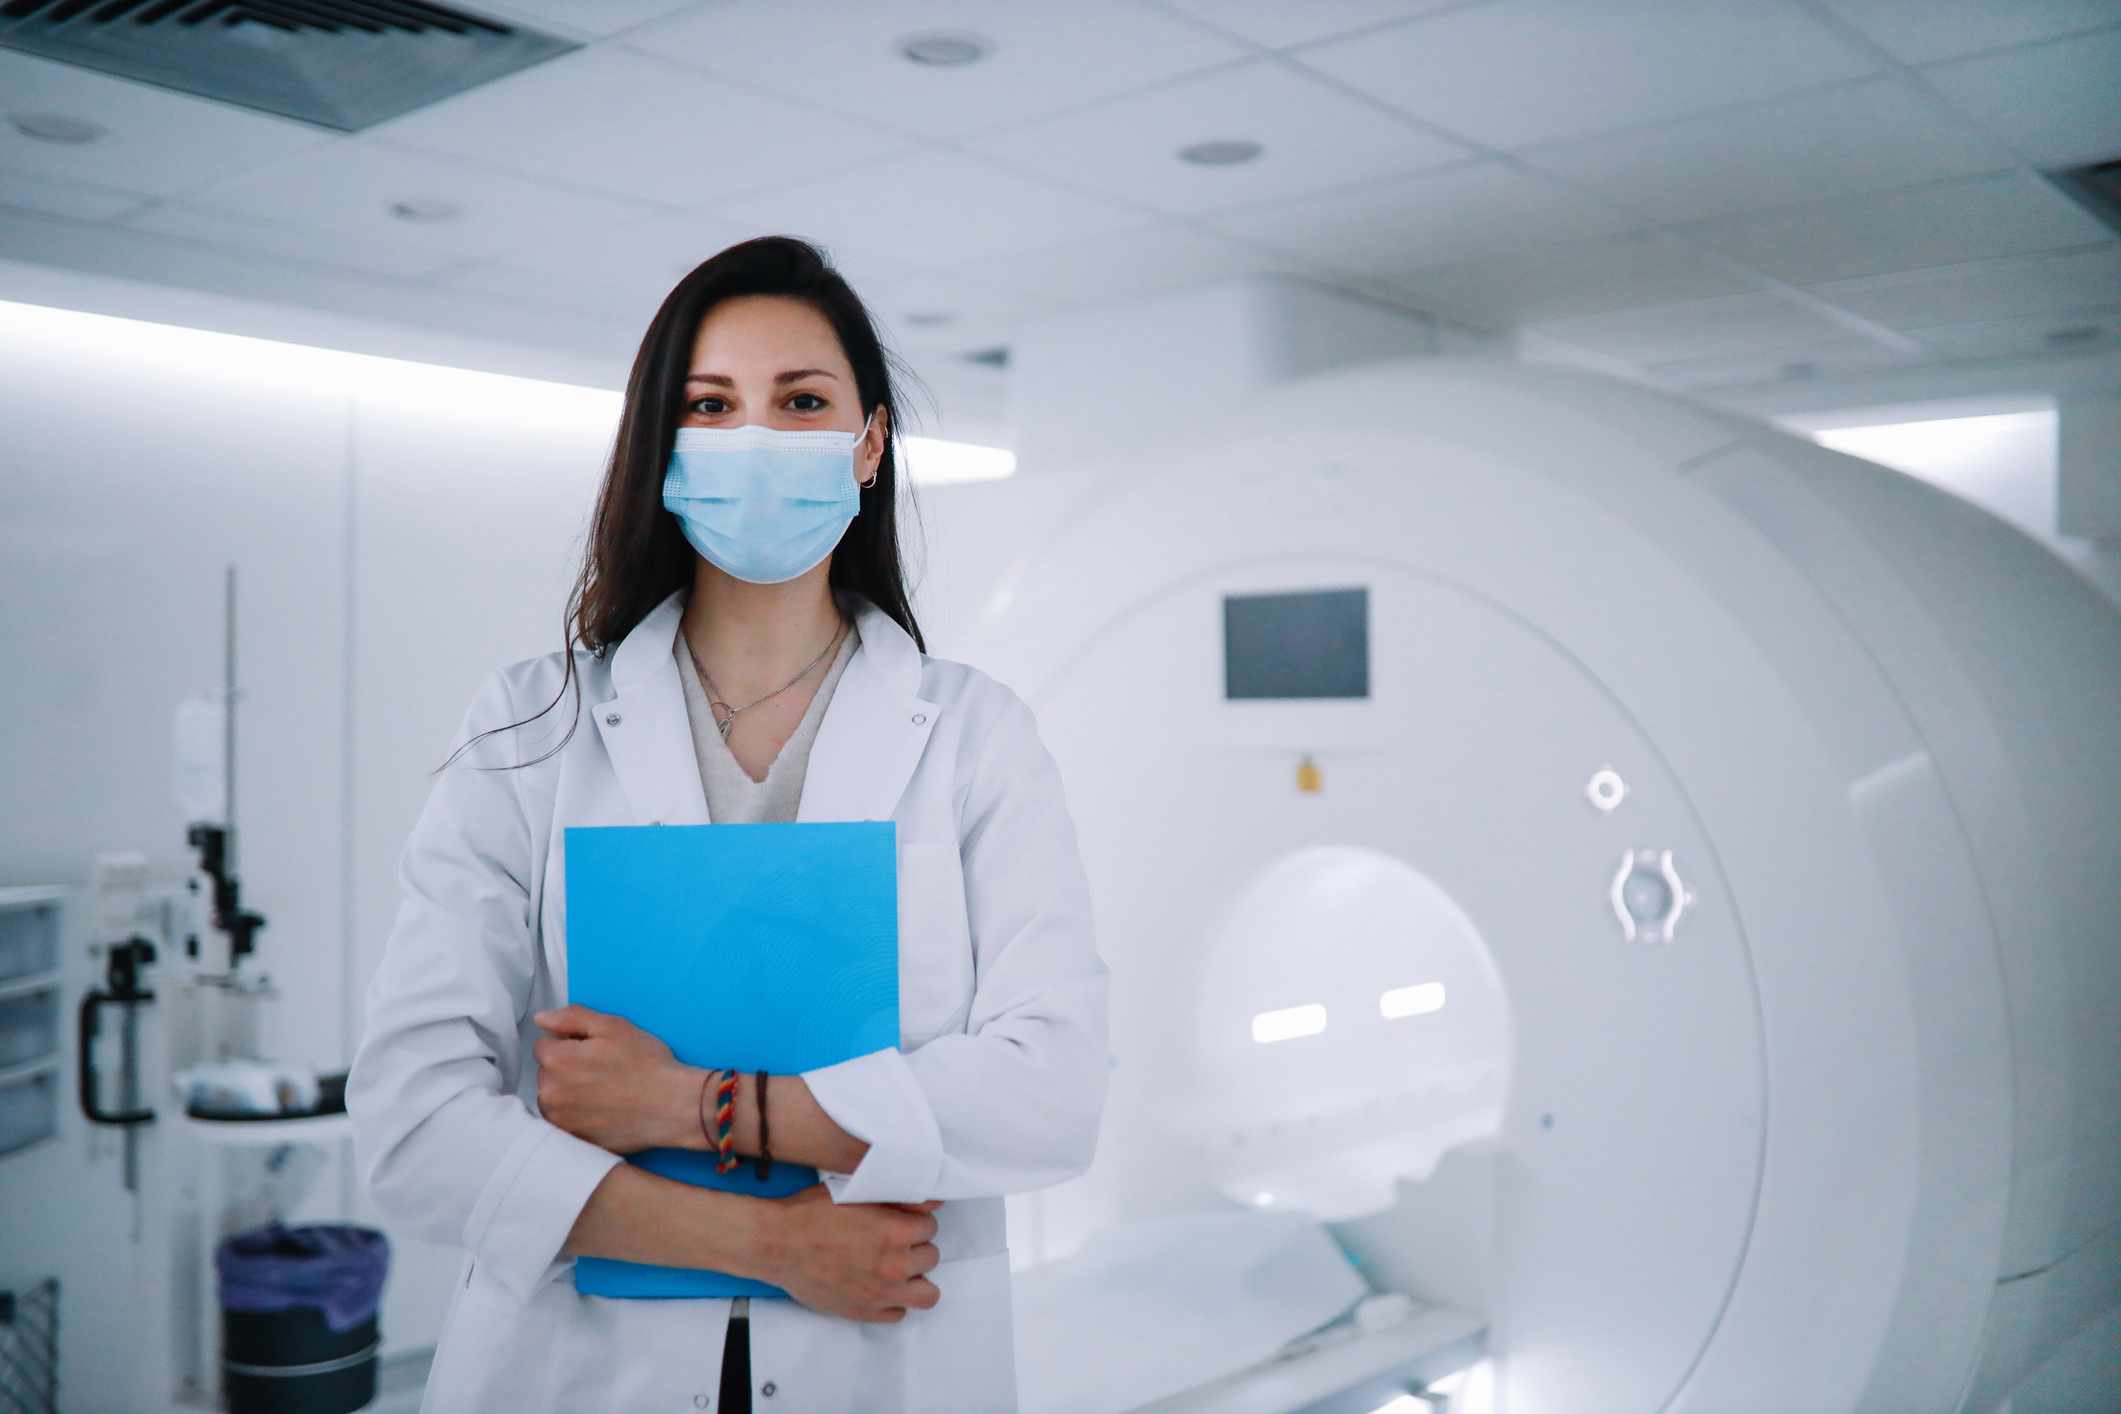 Masked woman undergoing an MRI scan